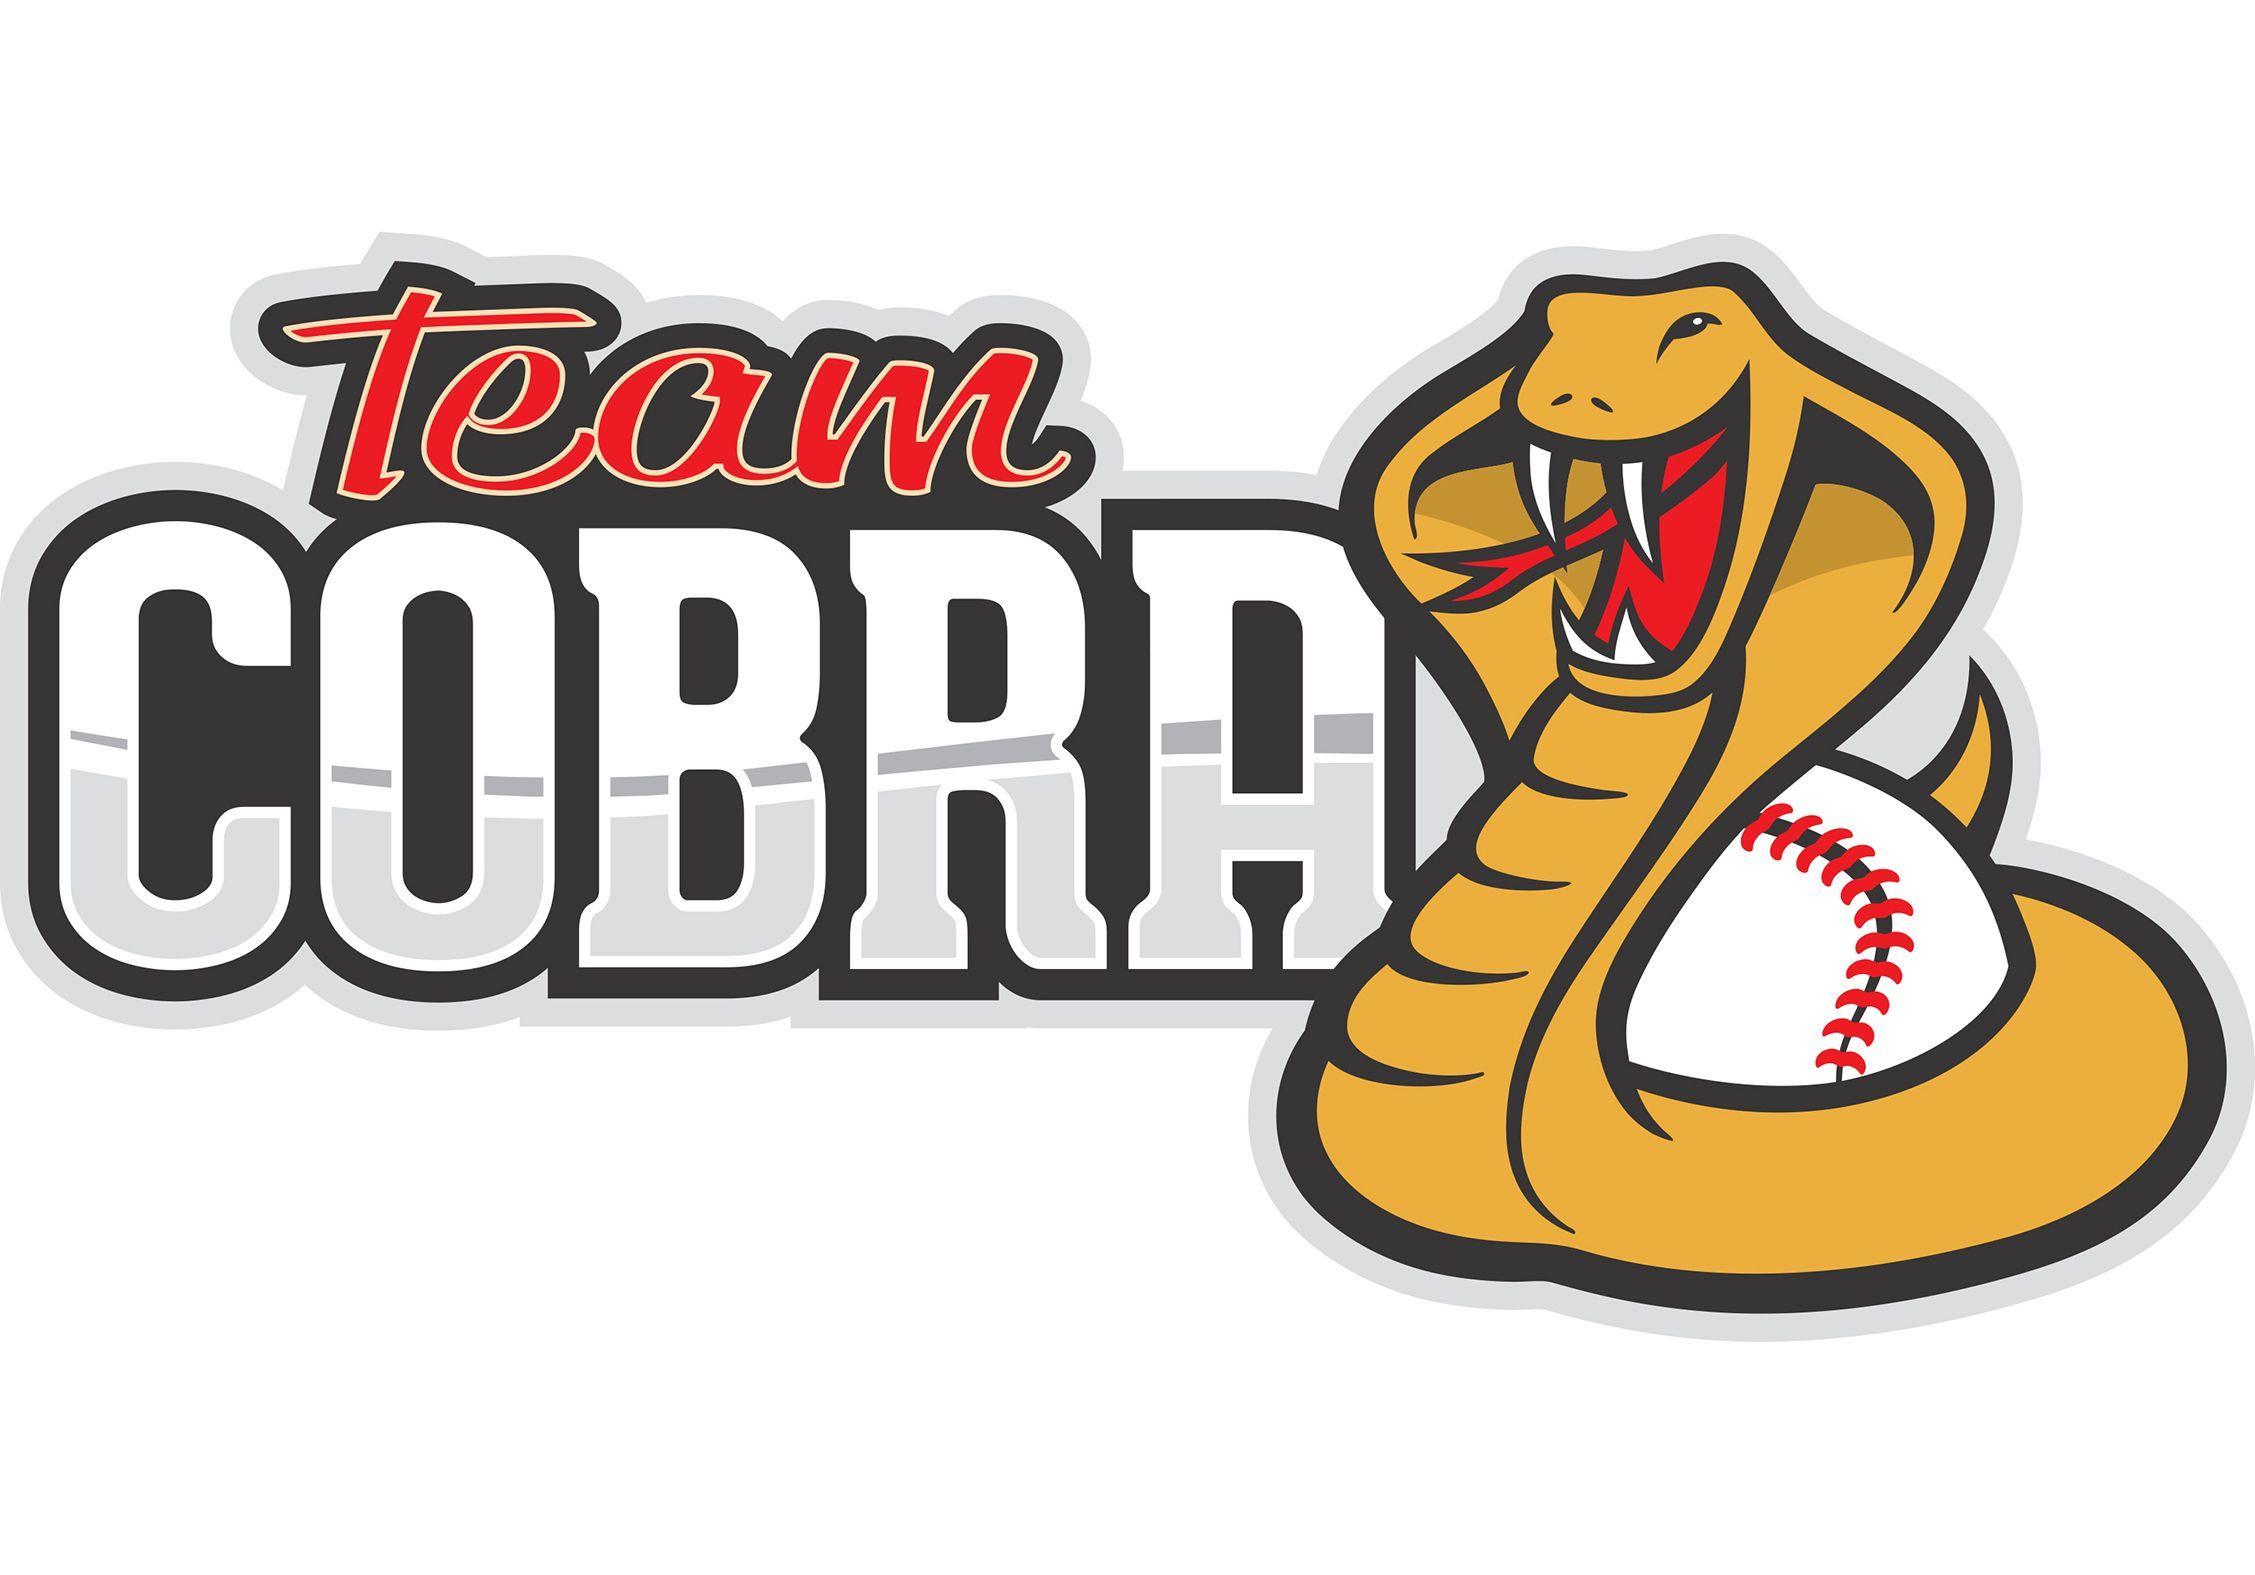 Cobras Baseball Logo - Team Cobra Logo - baseball team | Logos | Logos, Sports logo, Baseball